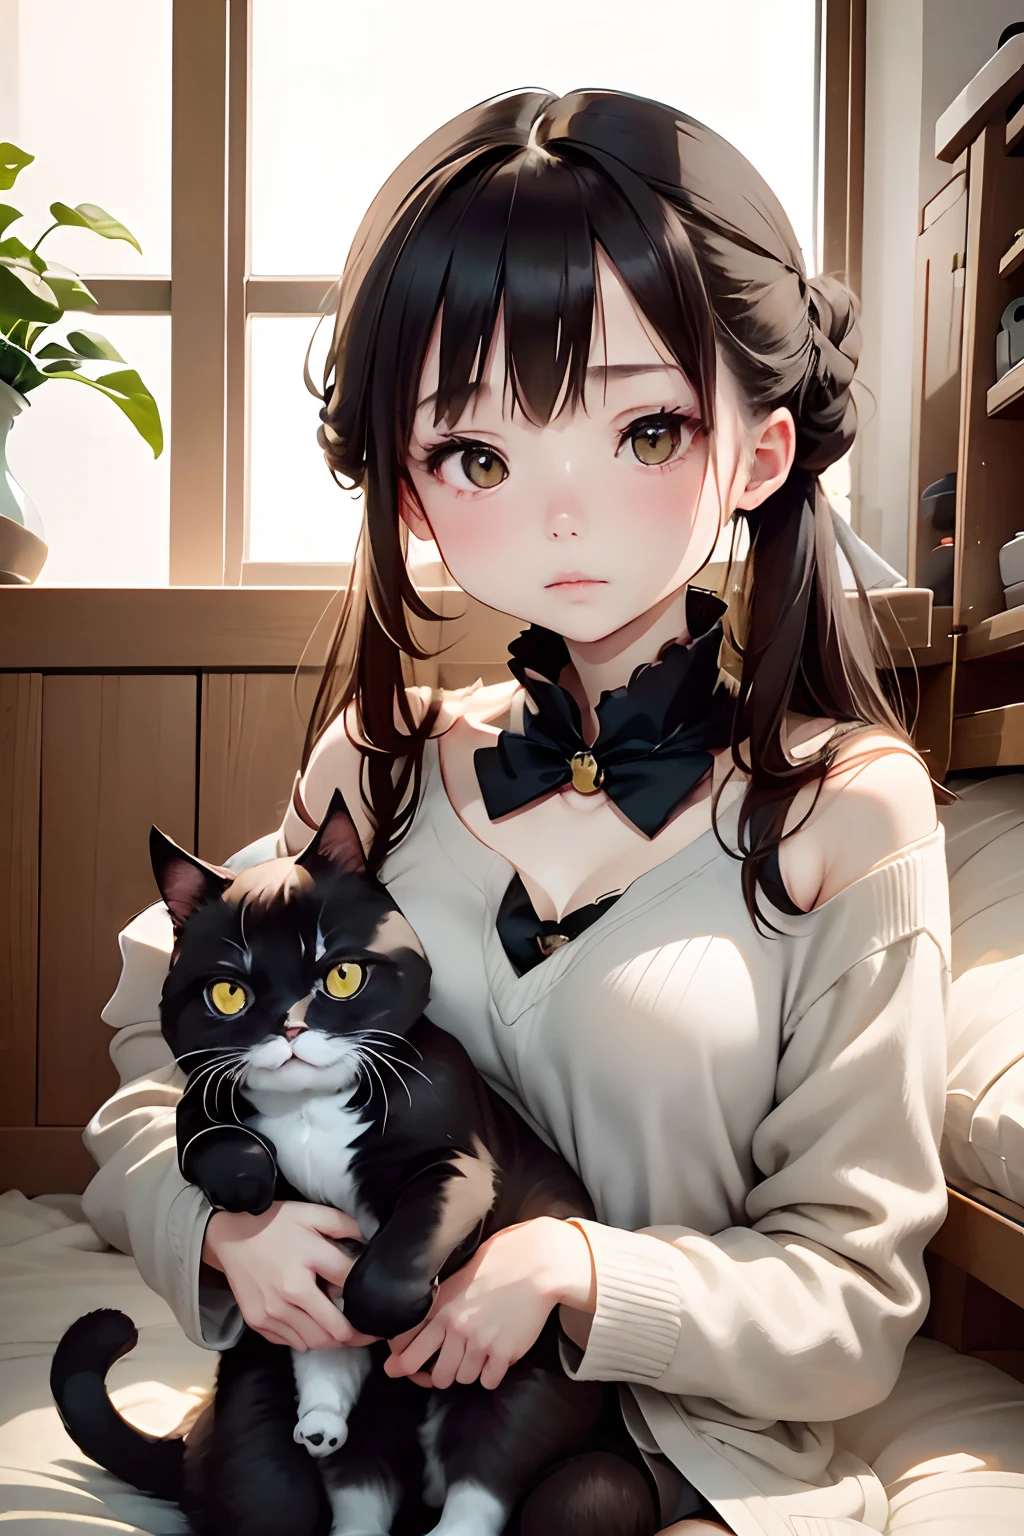 de primera calidad、Chica sosteniendo un gato negro、linda niña de 14 años、Moño con cabello castaño atado.、gato negro、aspecto natural、tiro largo、luz natural